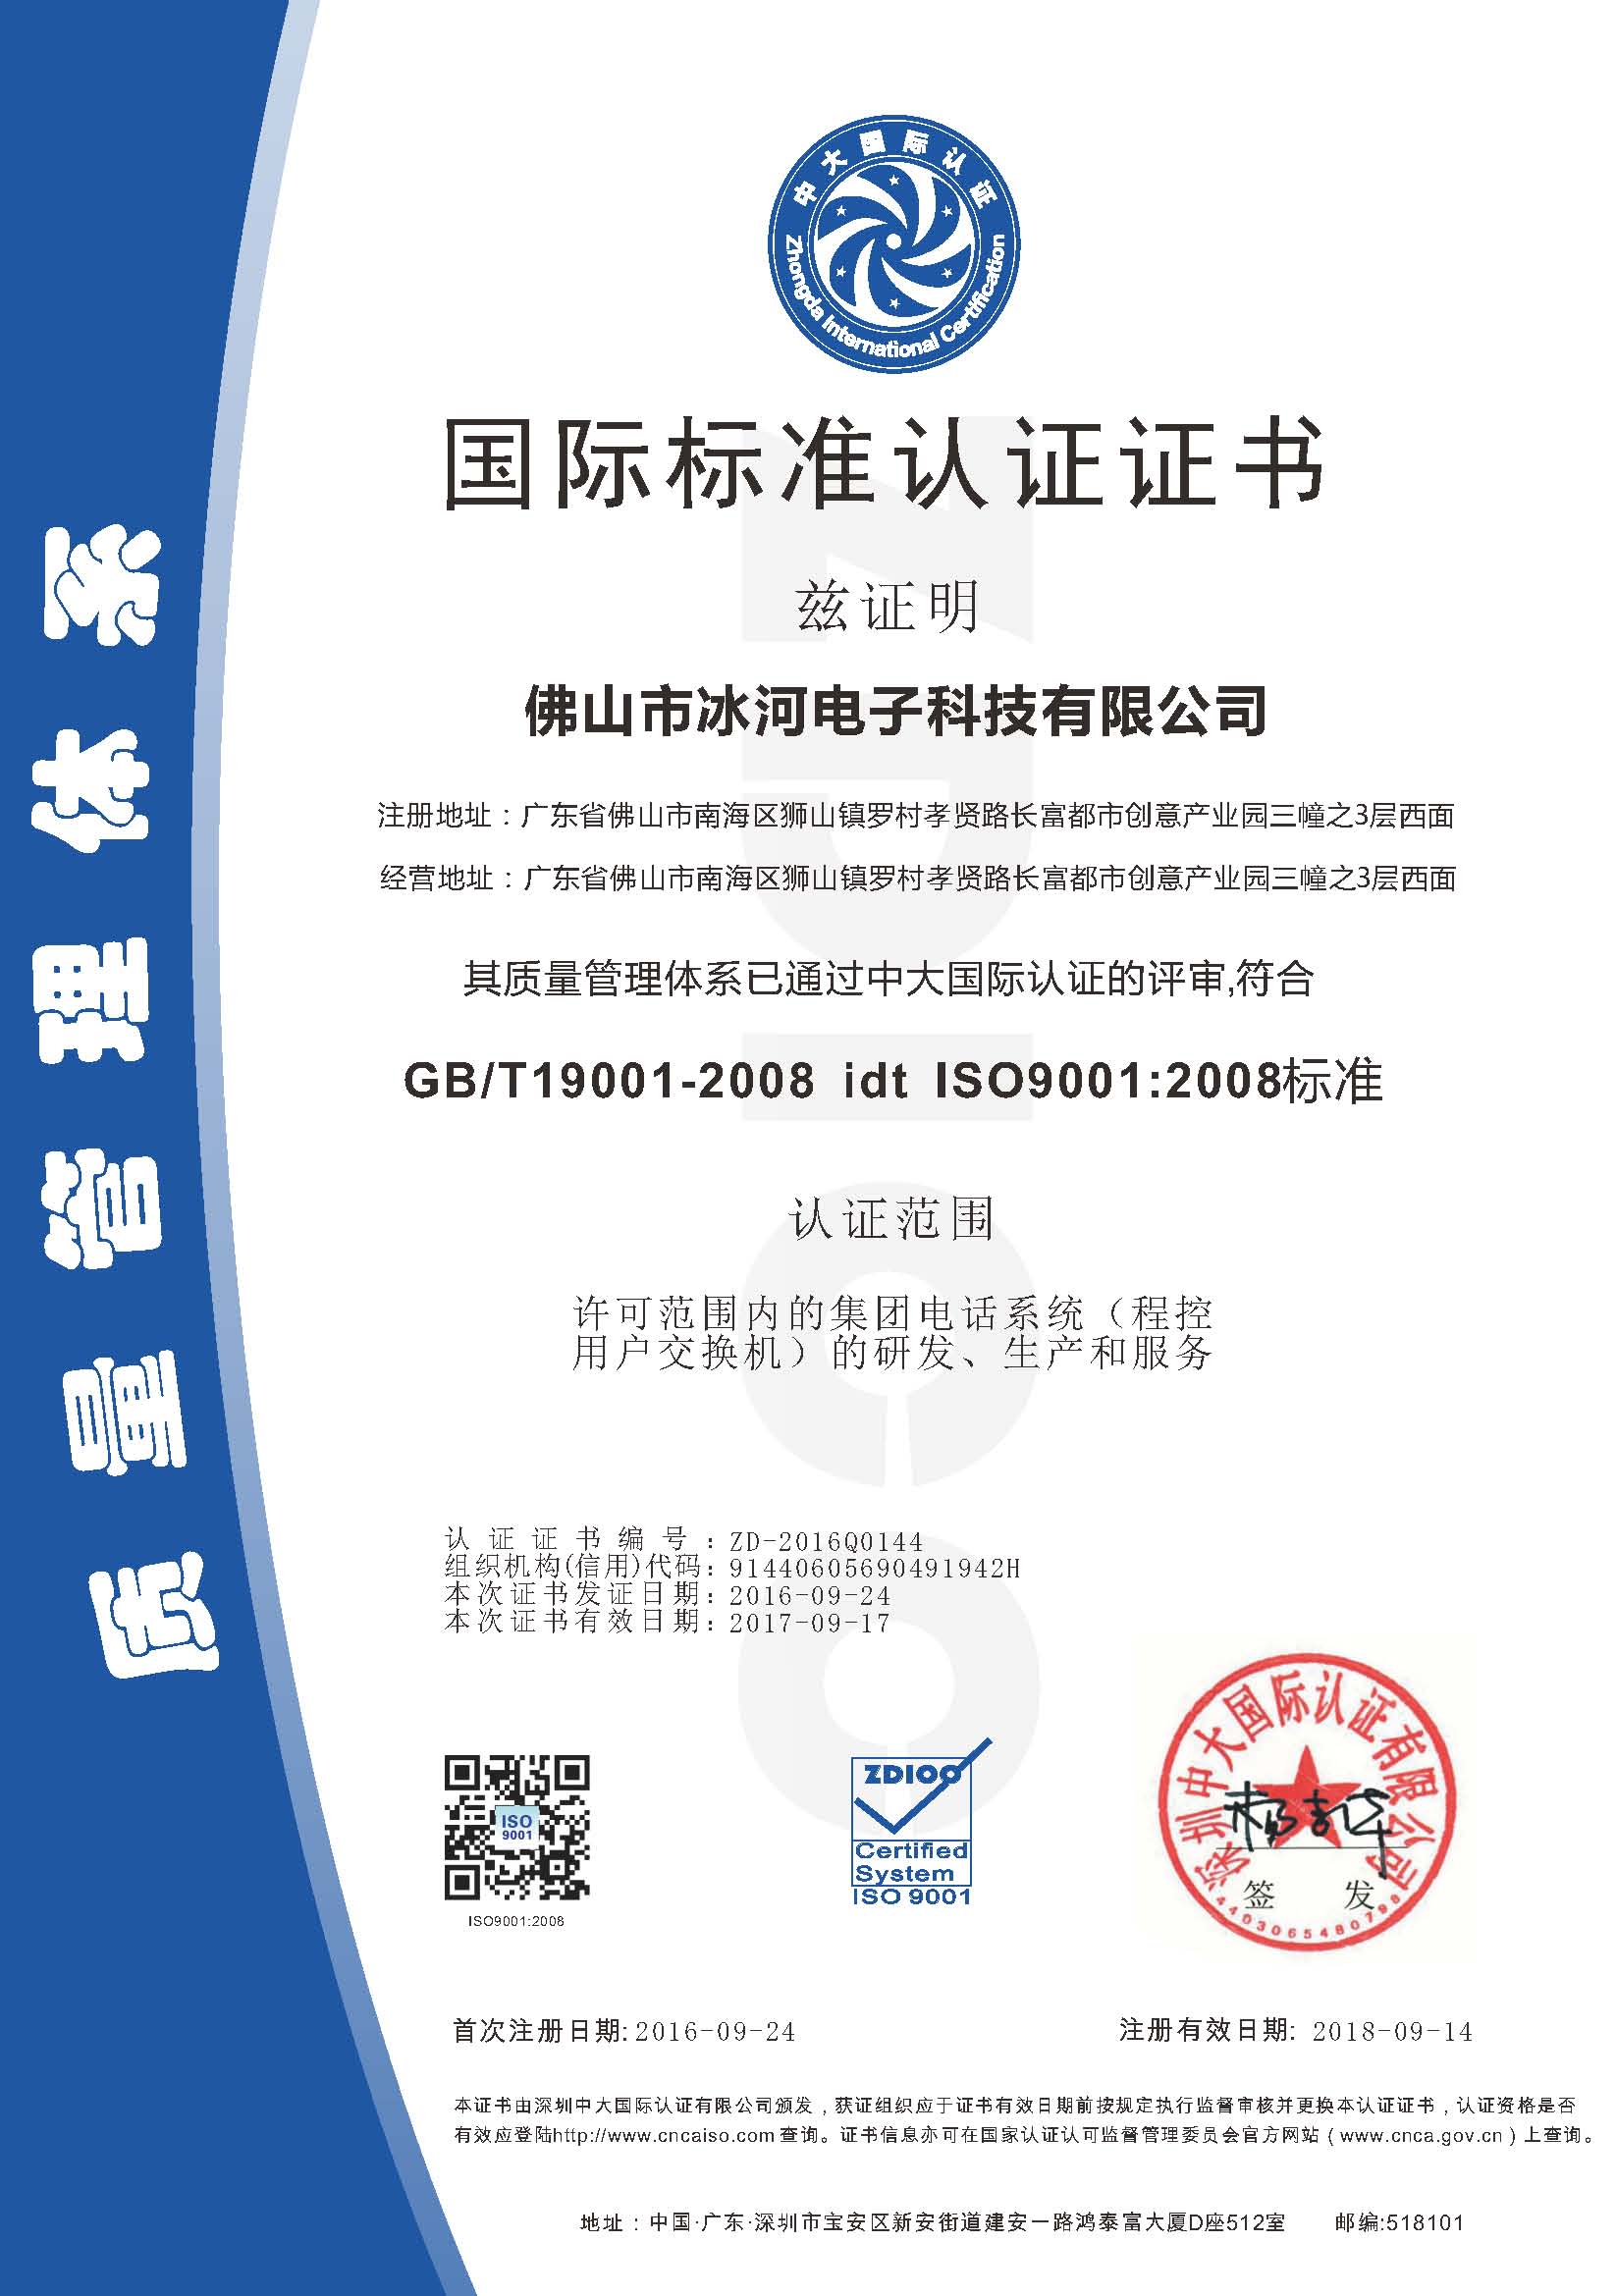 佛山市冰河电子科技有限公司ISO证书-中文.jpg